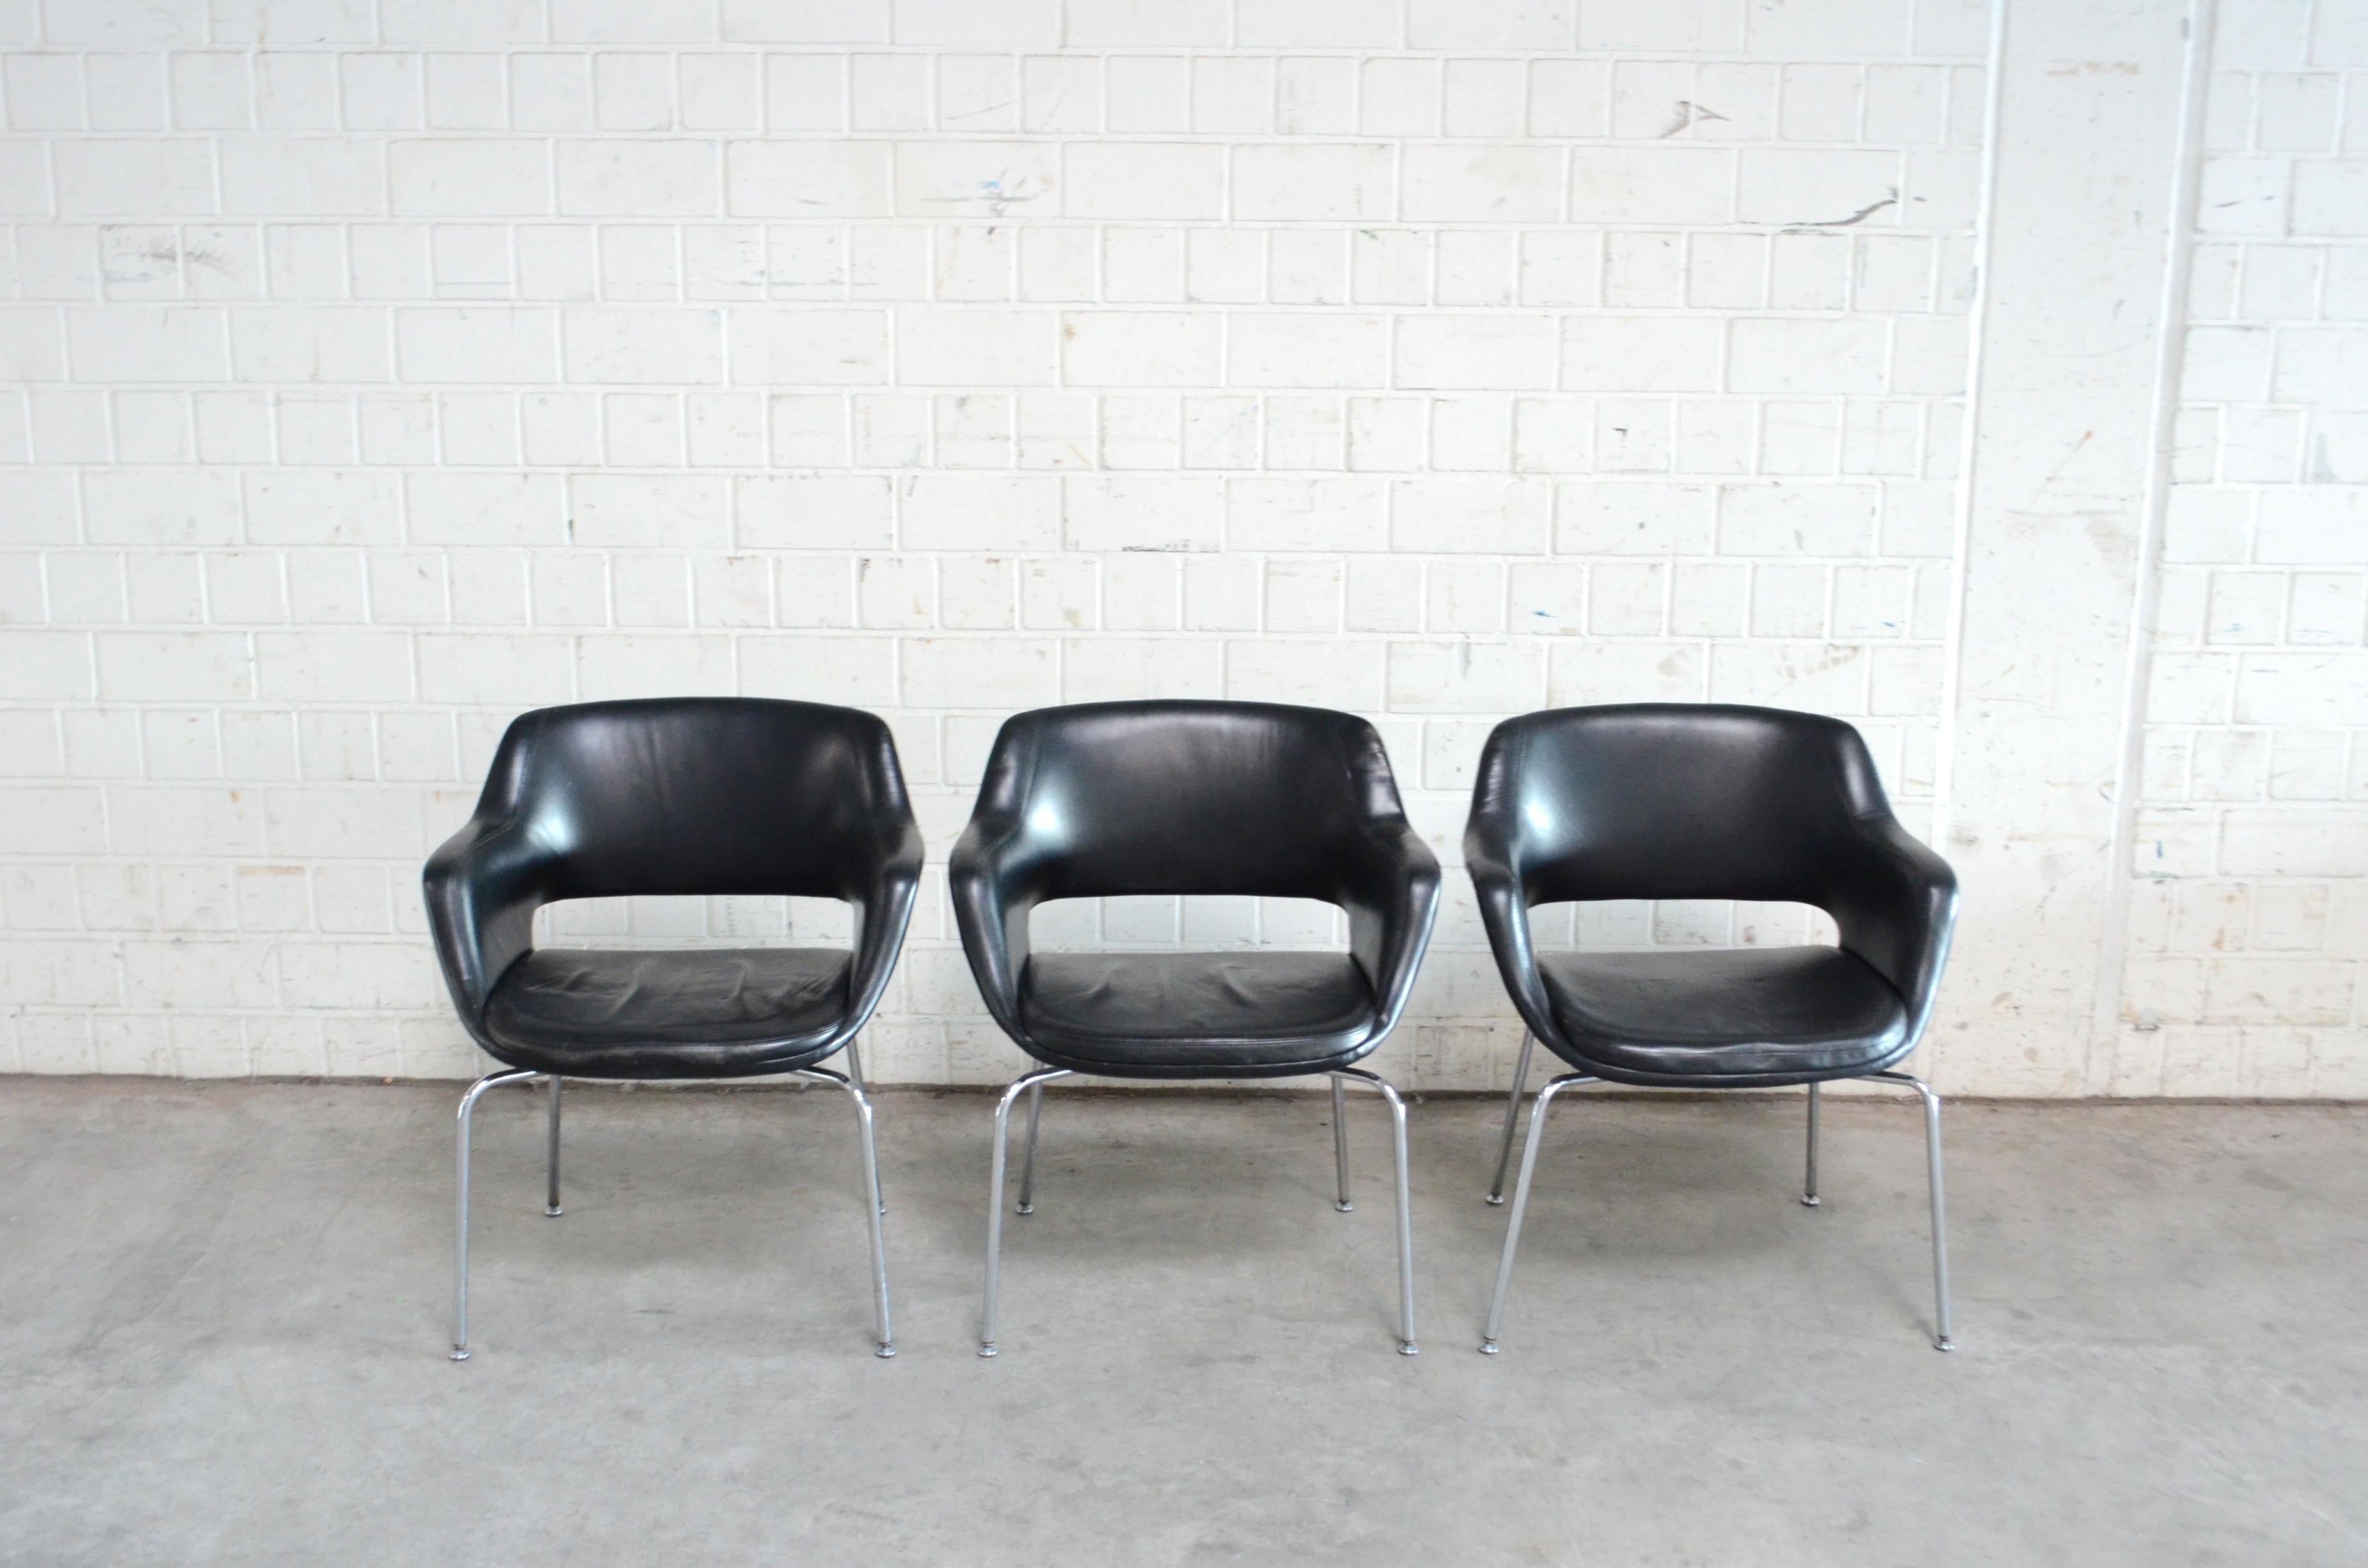 Dieses Modell Kilta wurde 1955 vom finnischen Designer Olli Mannermaa für Martela entworfen.
Der Kilta-Stuhl ist ein finnischer Designklassiker. Das zeitlose Design und der bequeme Sitz des Kilta garantieren seine anhaltende Beliebtheit.
Es ist